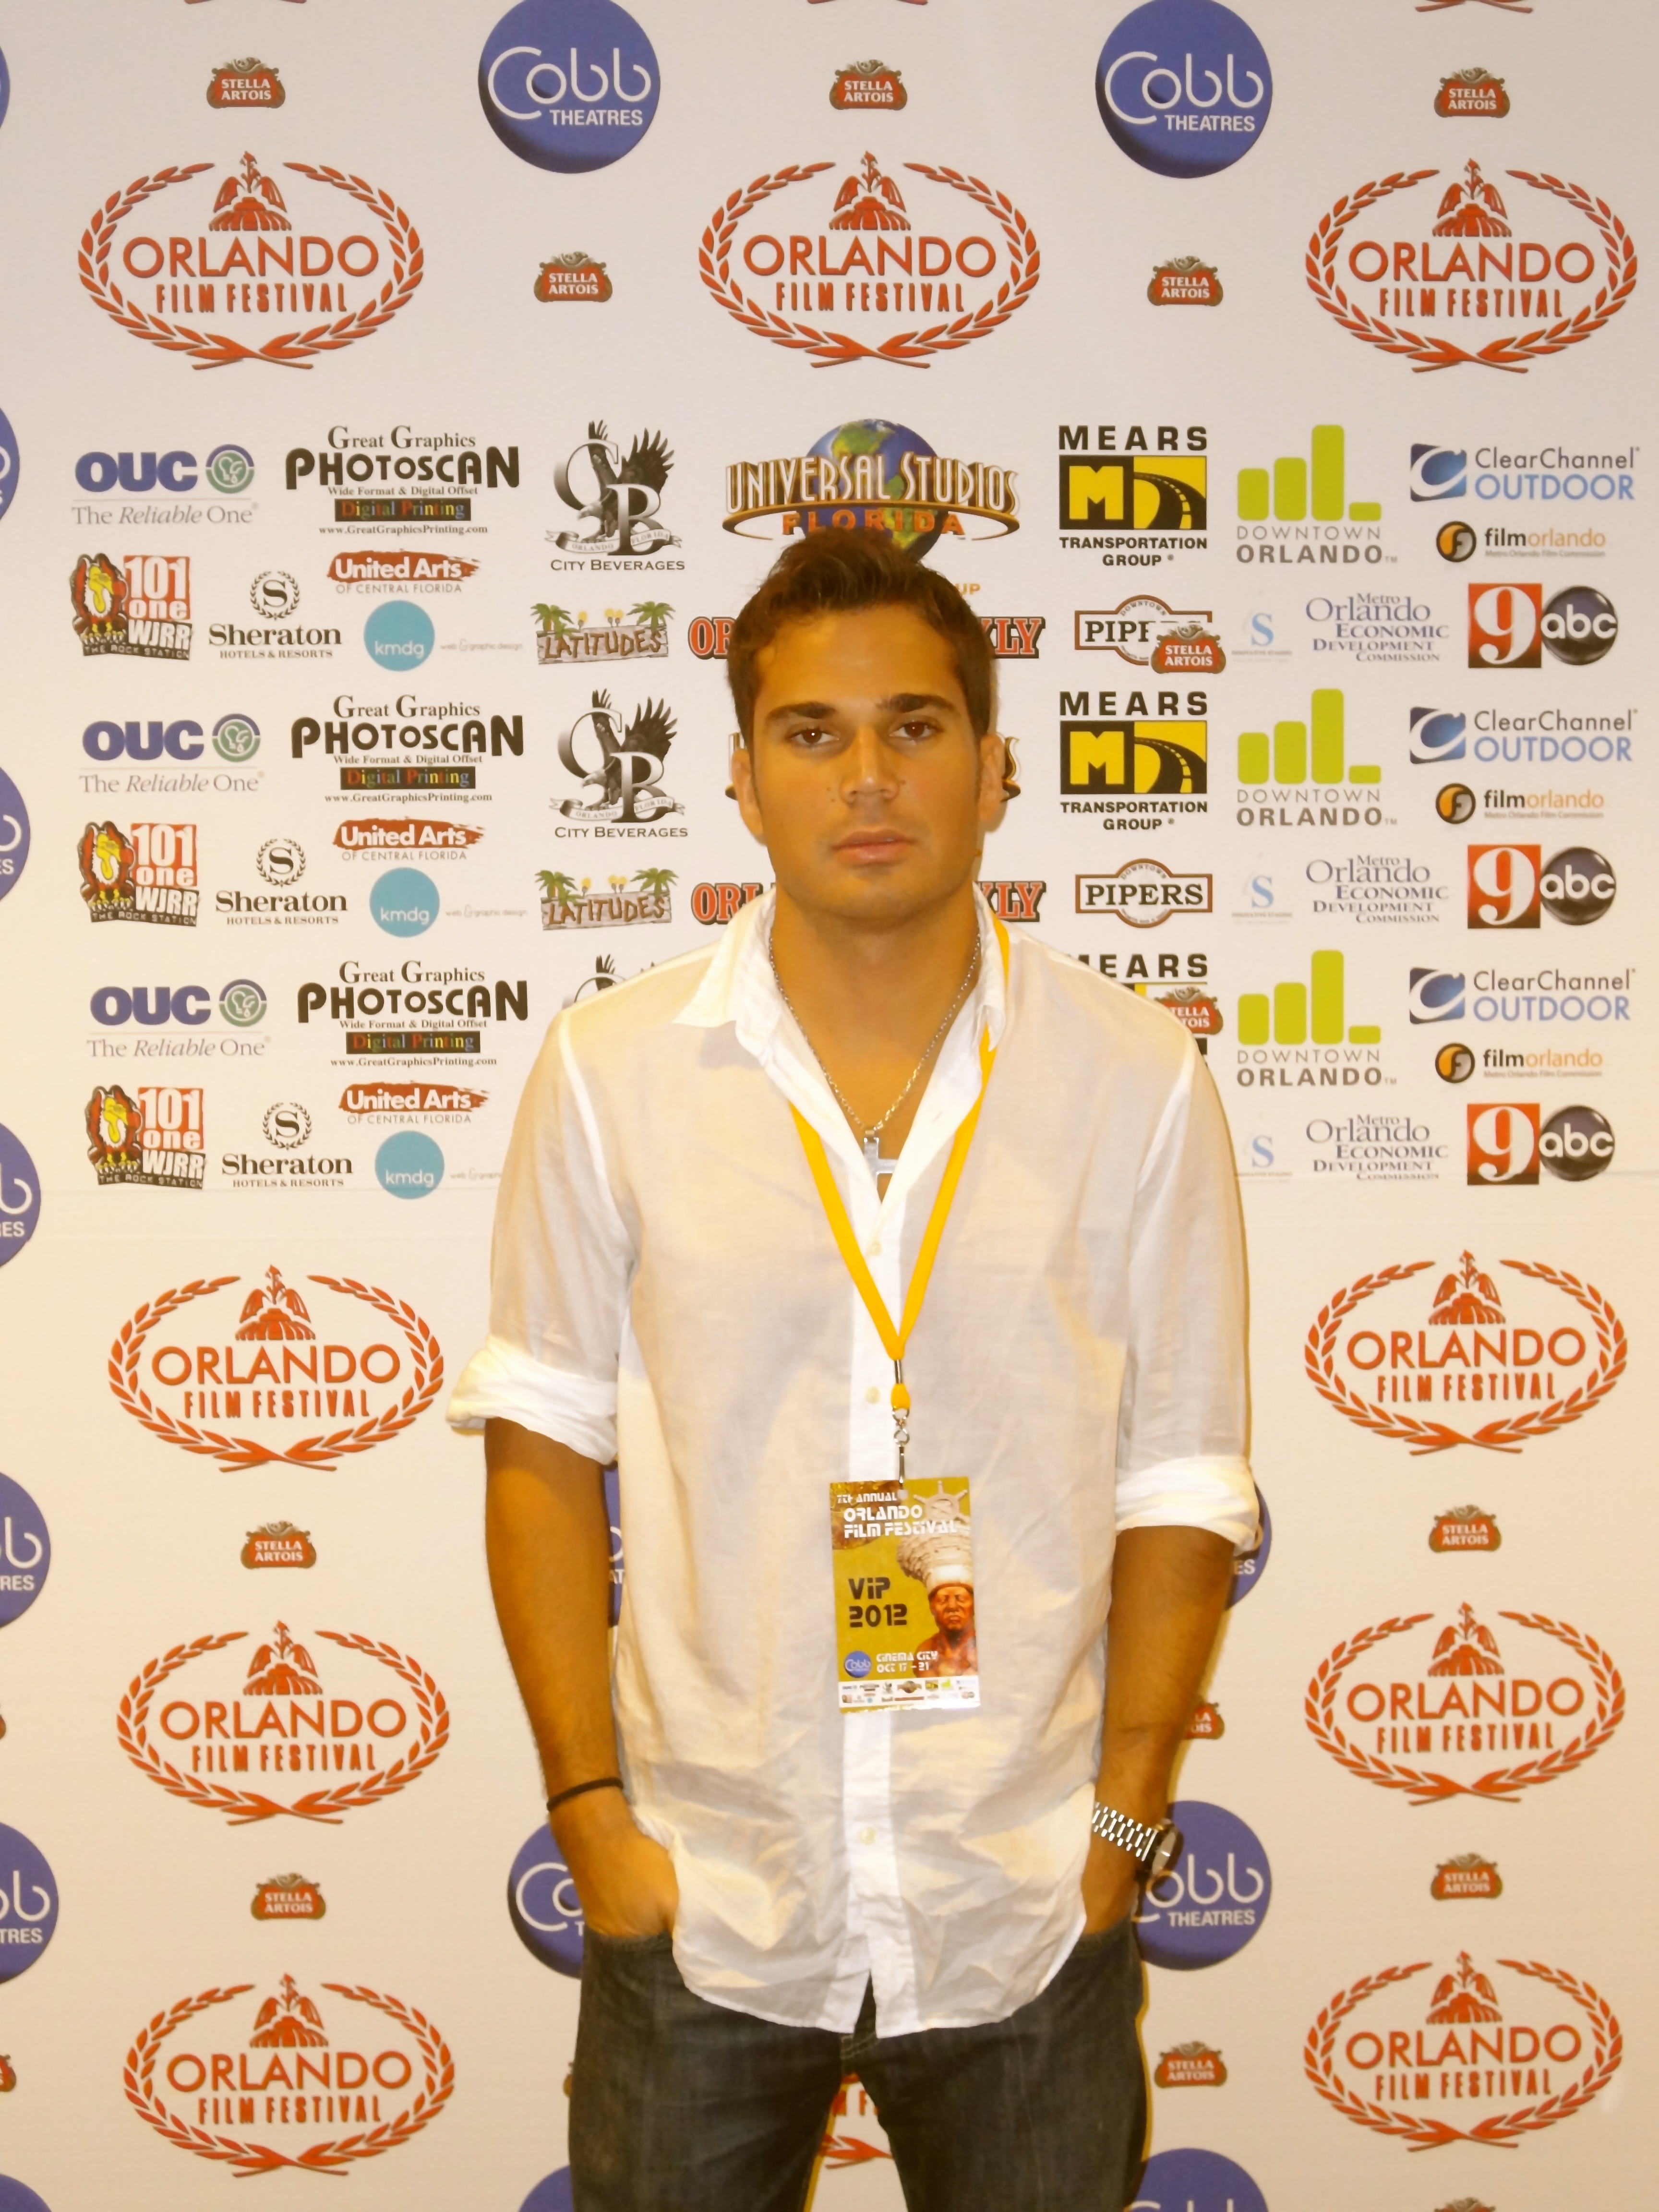 Orlando Film Festival 2012